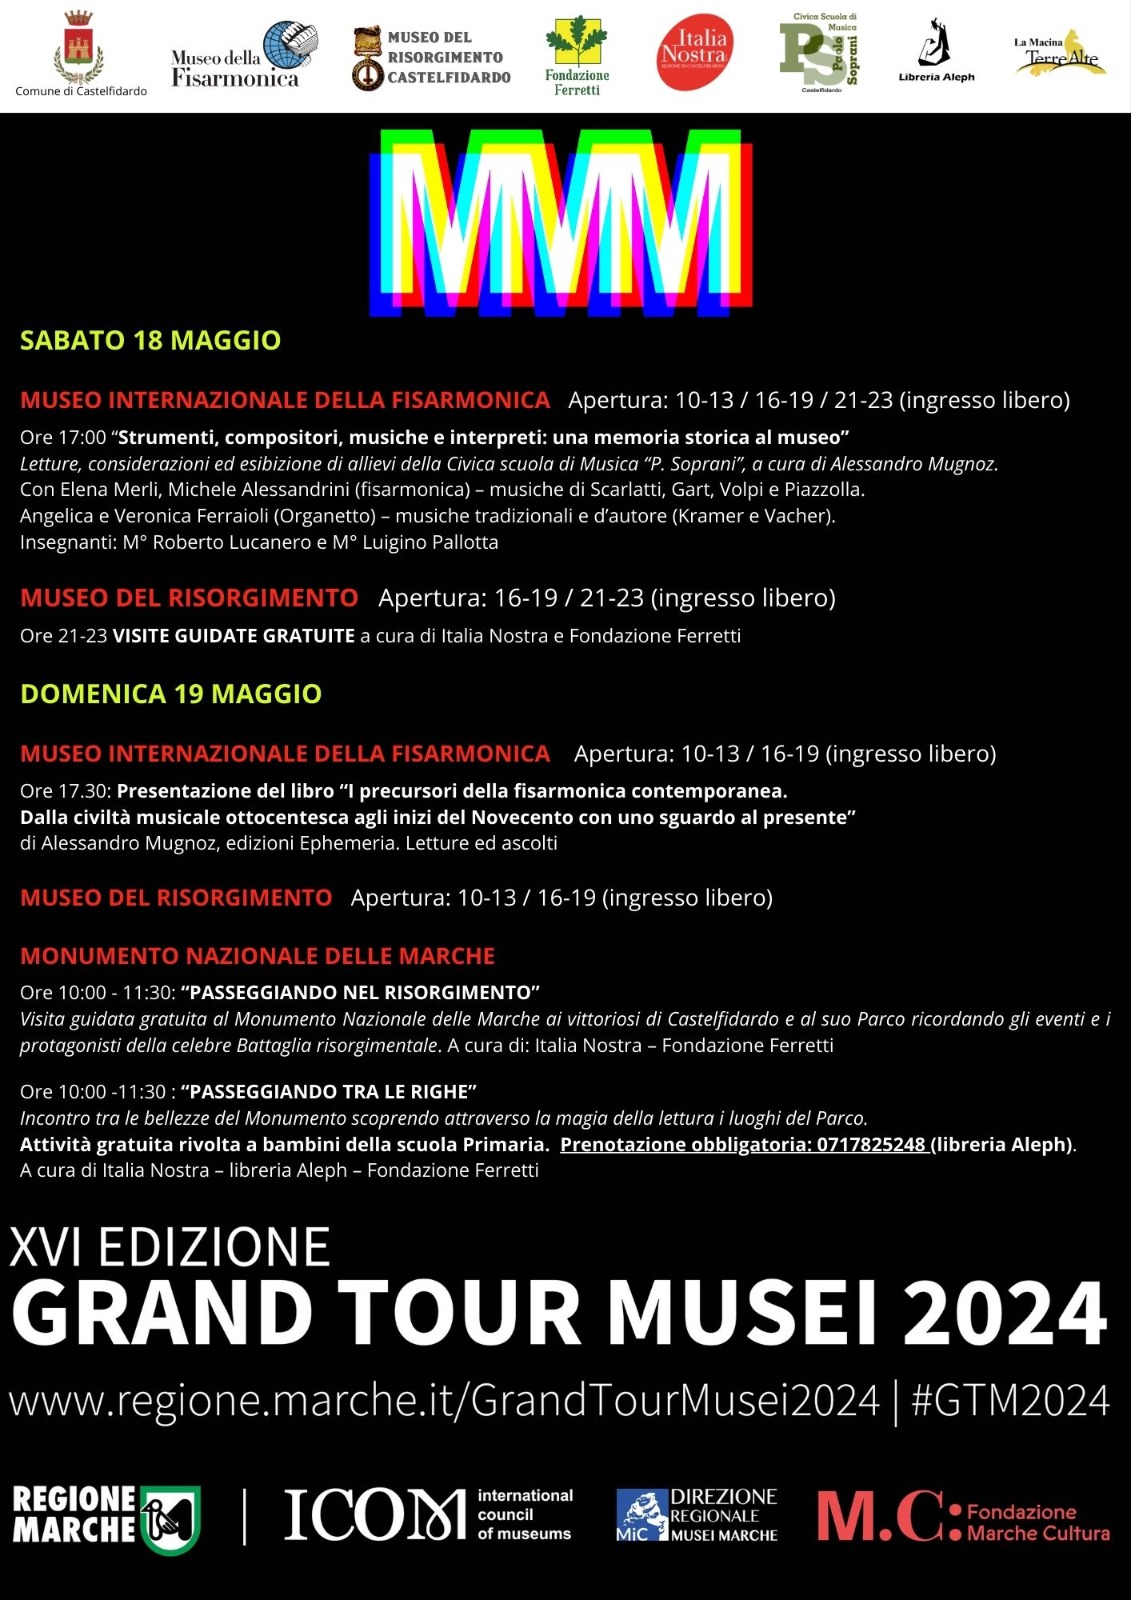 GRAND TOUR MUSEI